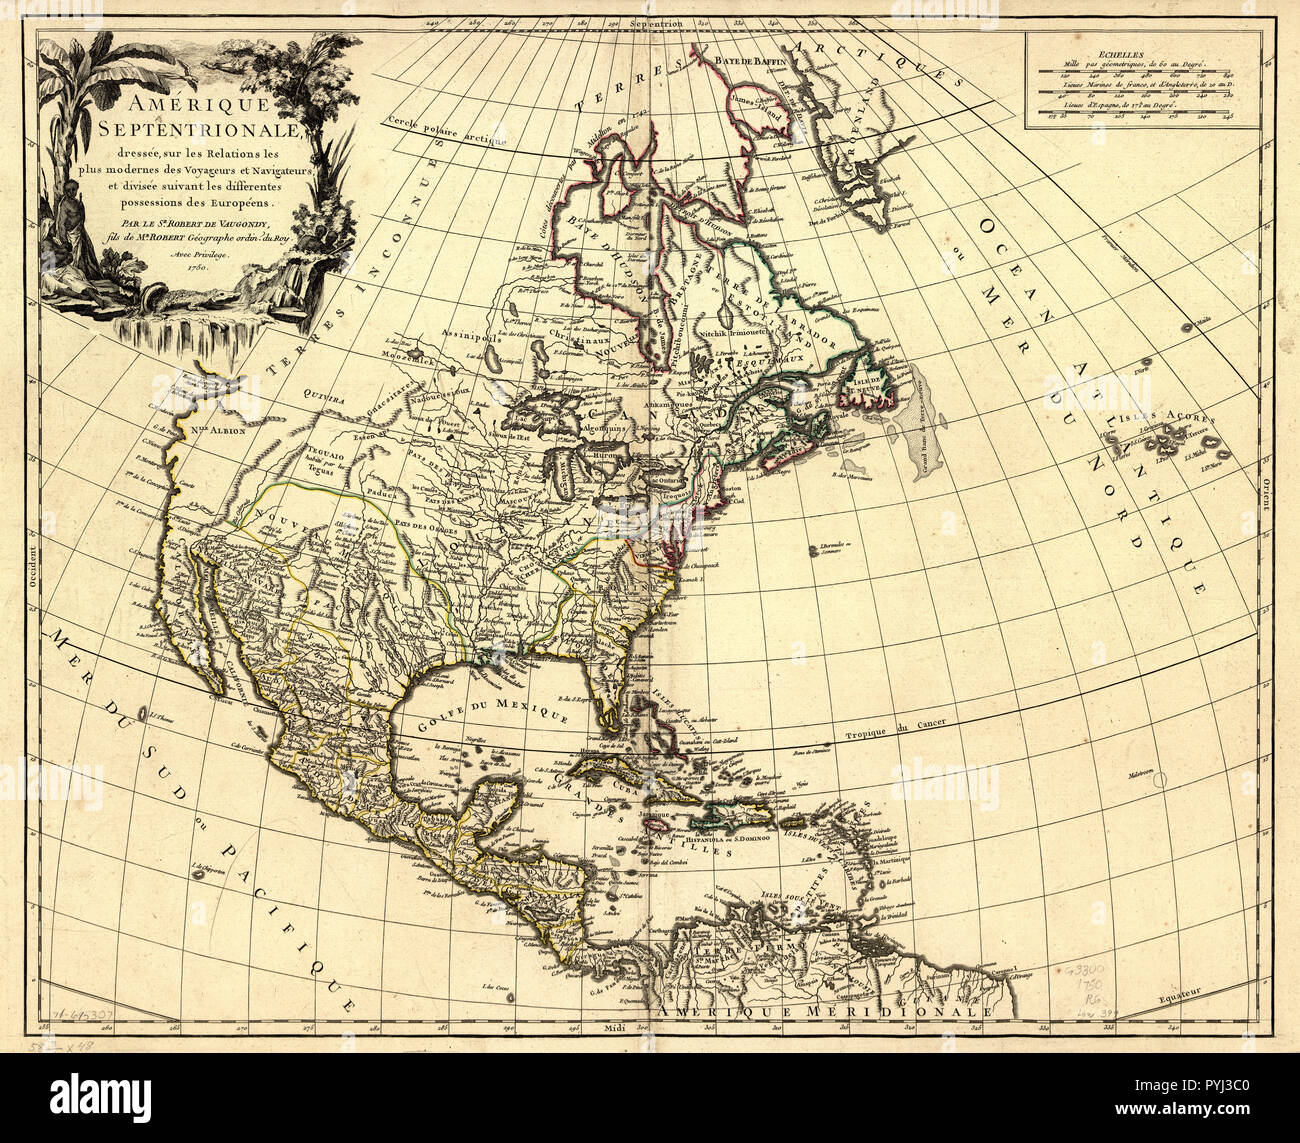 Vintage Maps / Antique Maps - Amérique septentrionale, dressée sur les relations les plus modernes des voyageurs et navigateurs, et divisée suivant les differentes possessions des européens Stock Photo